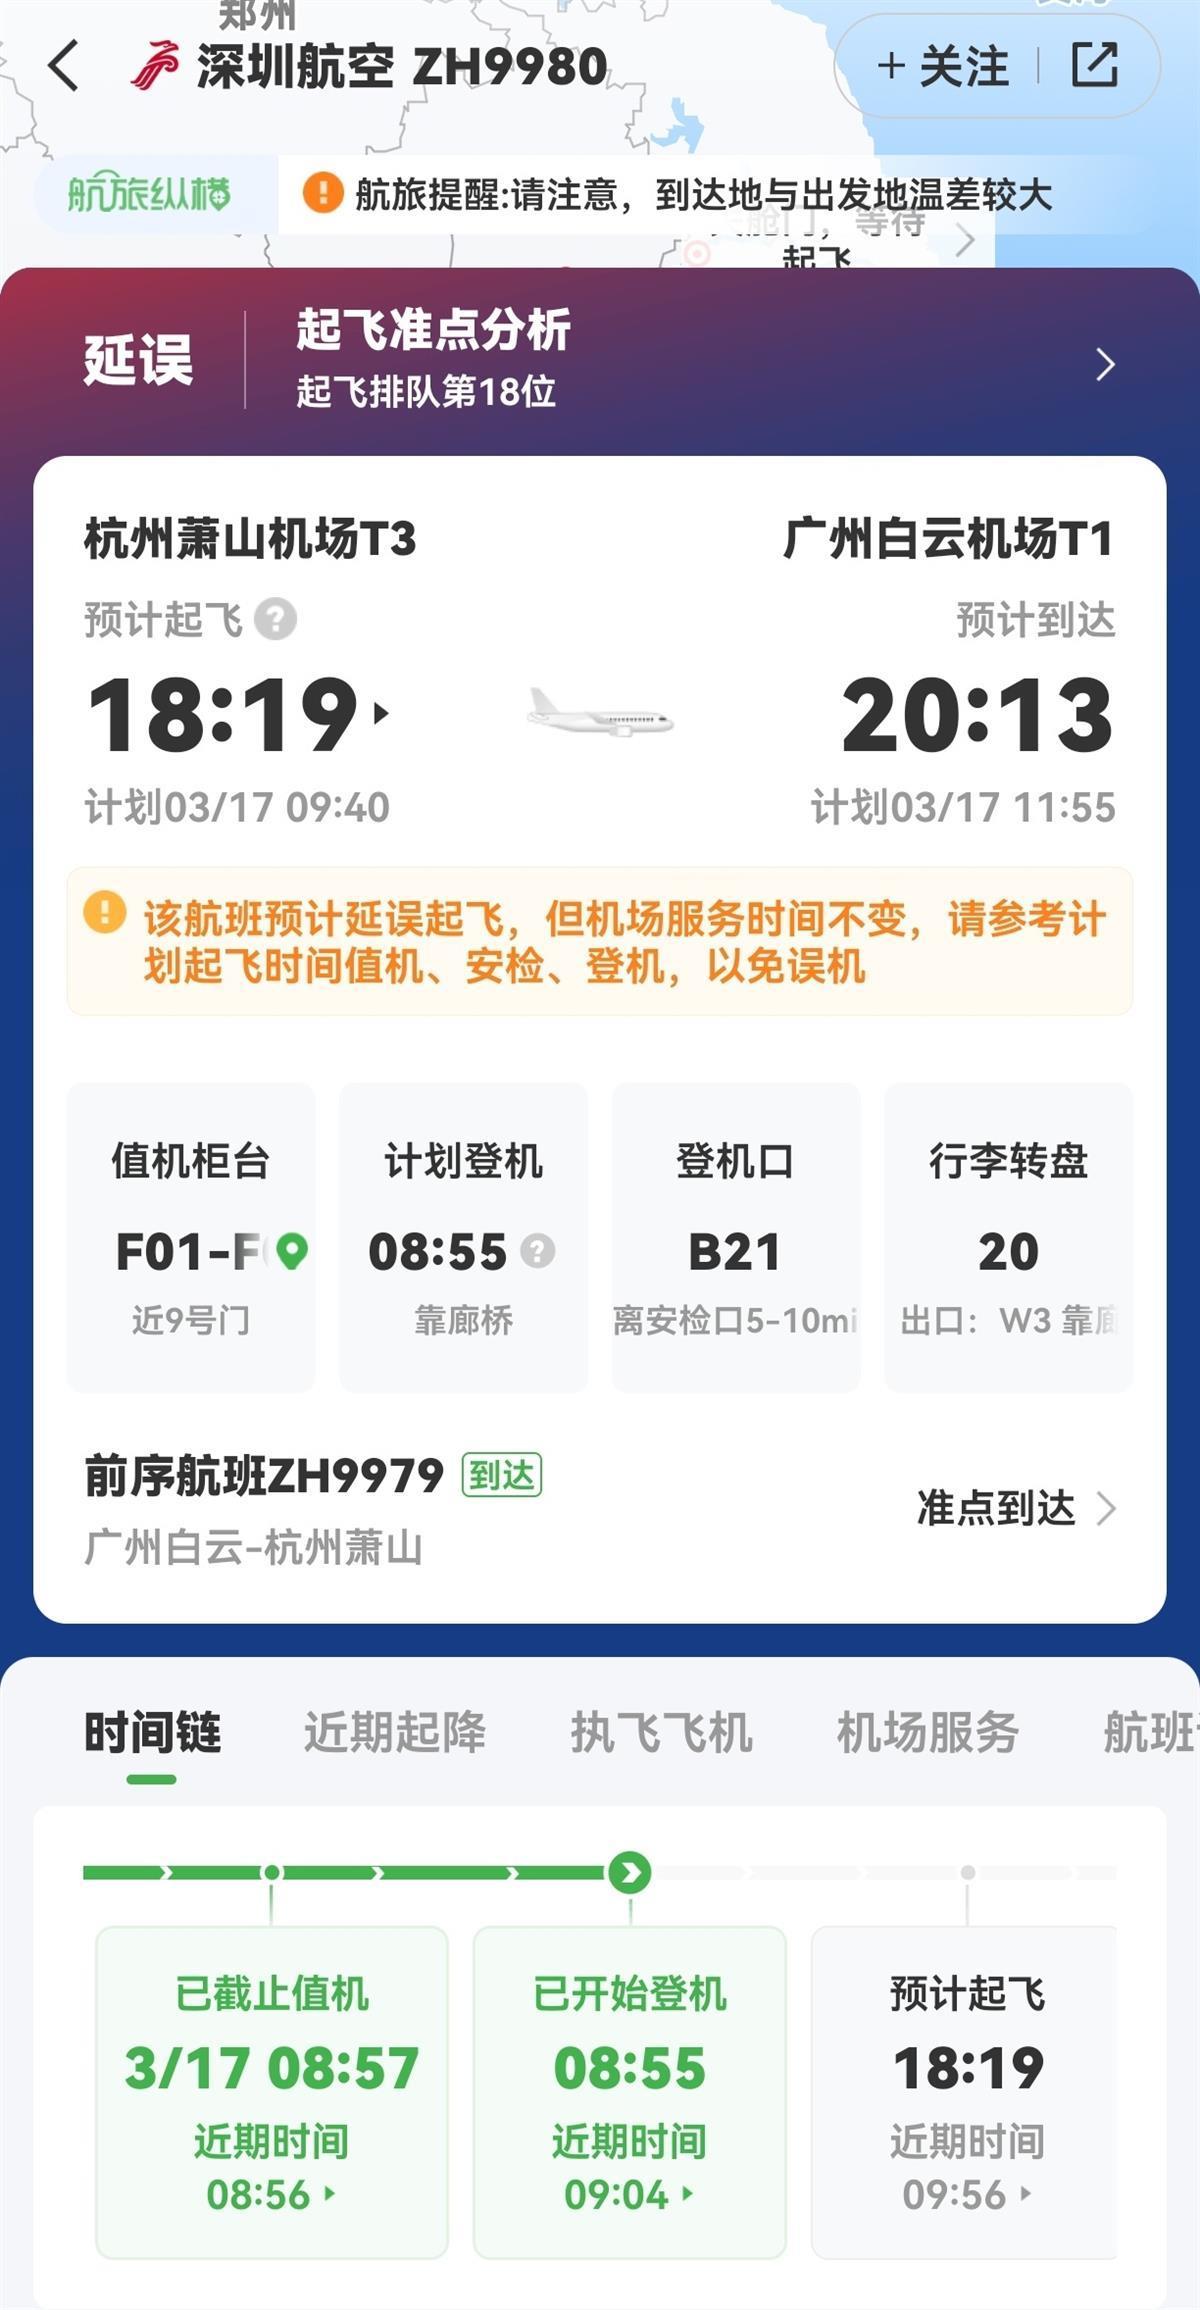 深航回应“航班在杭州机场跑道折返”：飞机出现故障，正检修